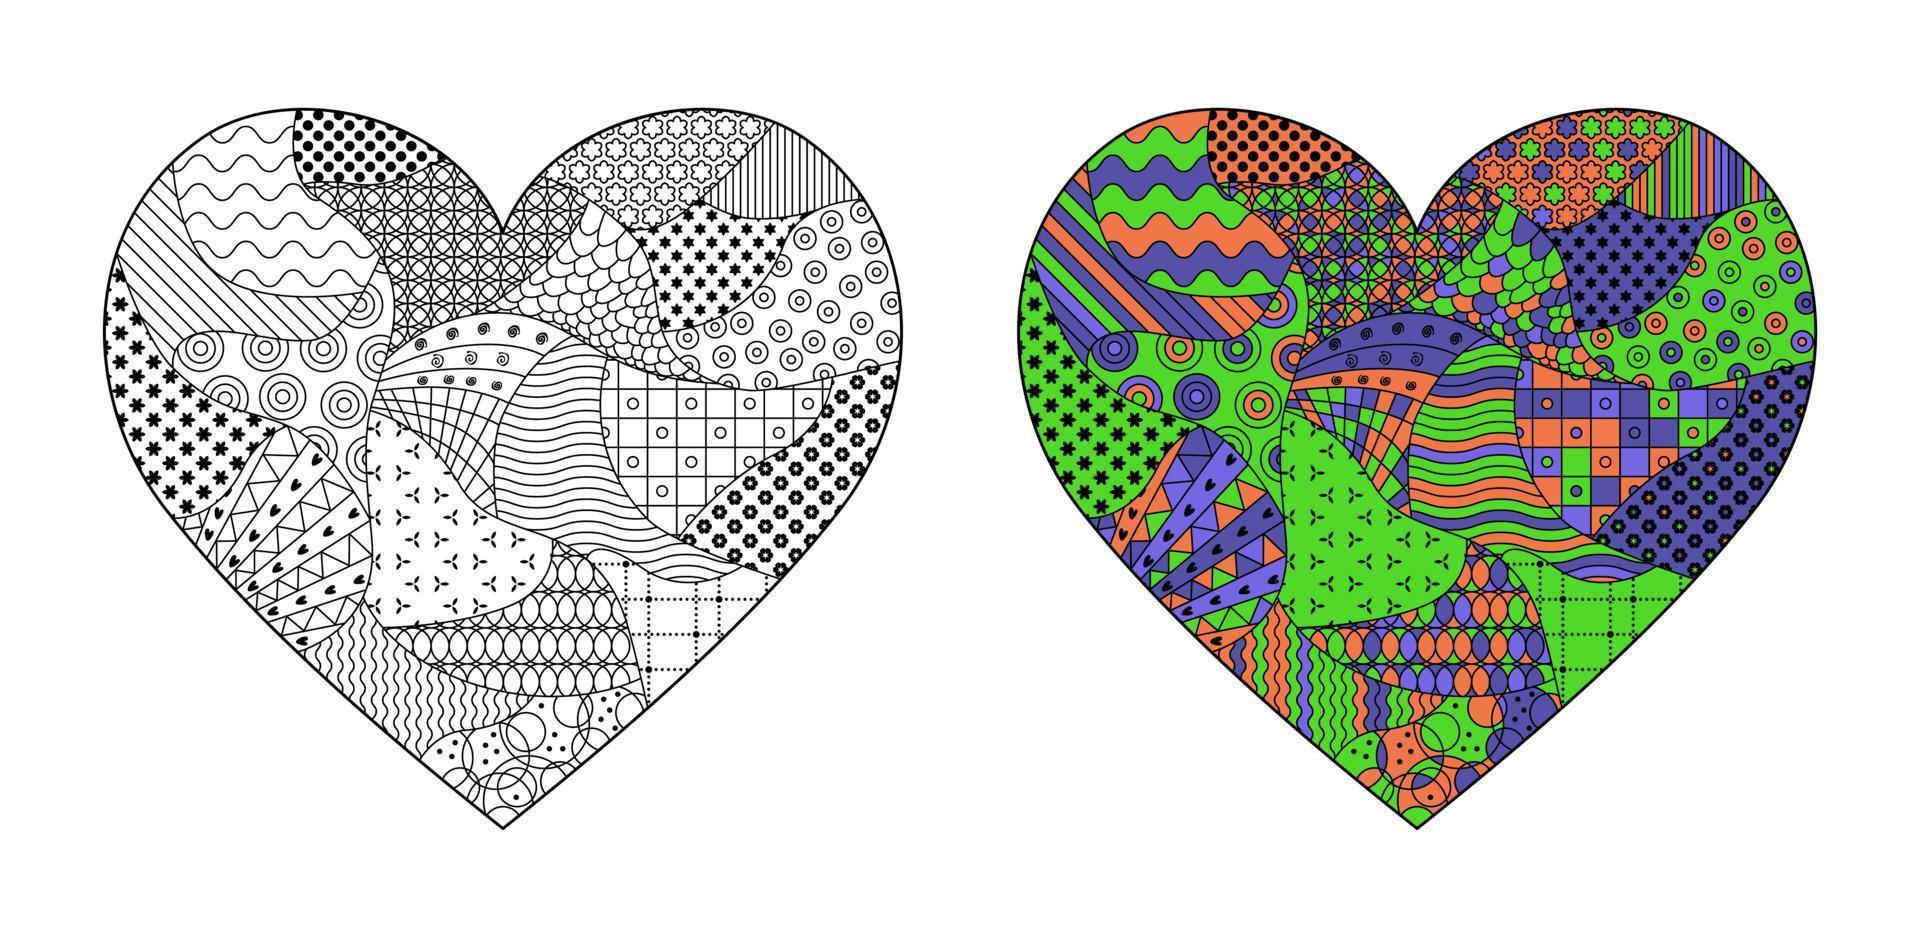 vektor illustration, mönster hjärta. målarbok, konstdesign från doodles, mönster och texturer. abstrakt linjekonst för bakgrund, designelement